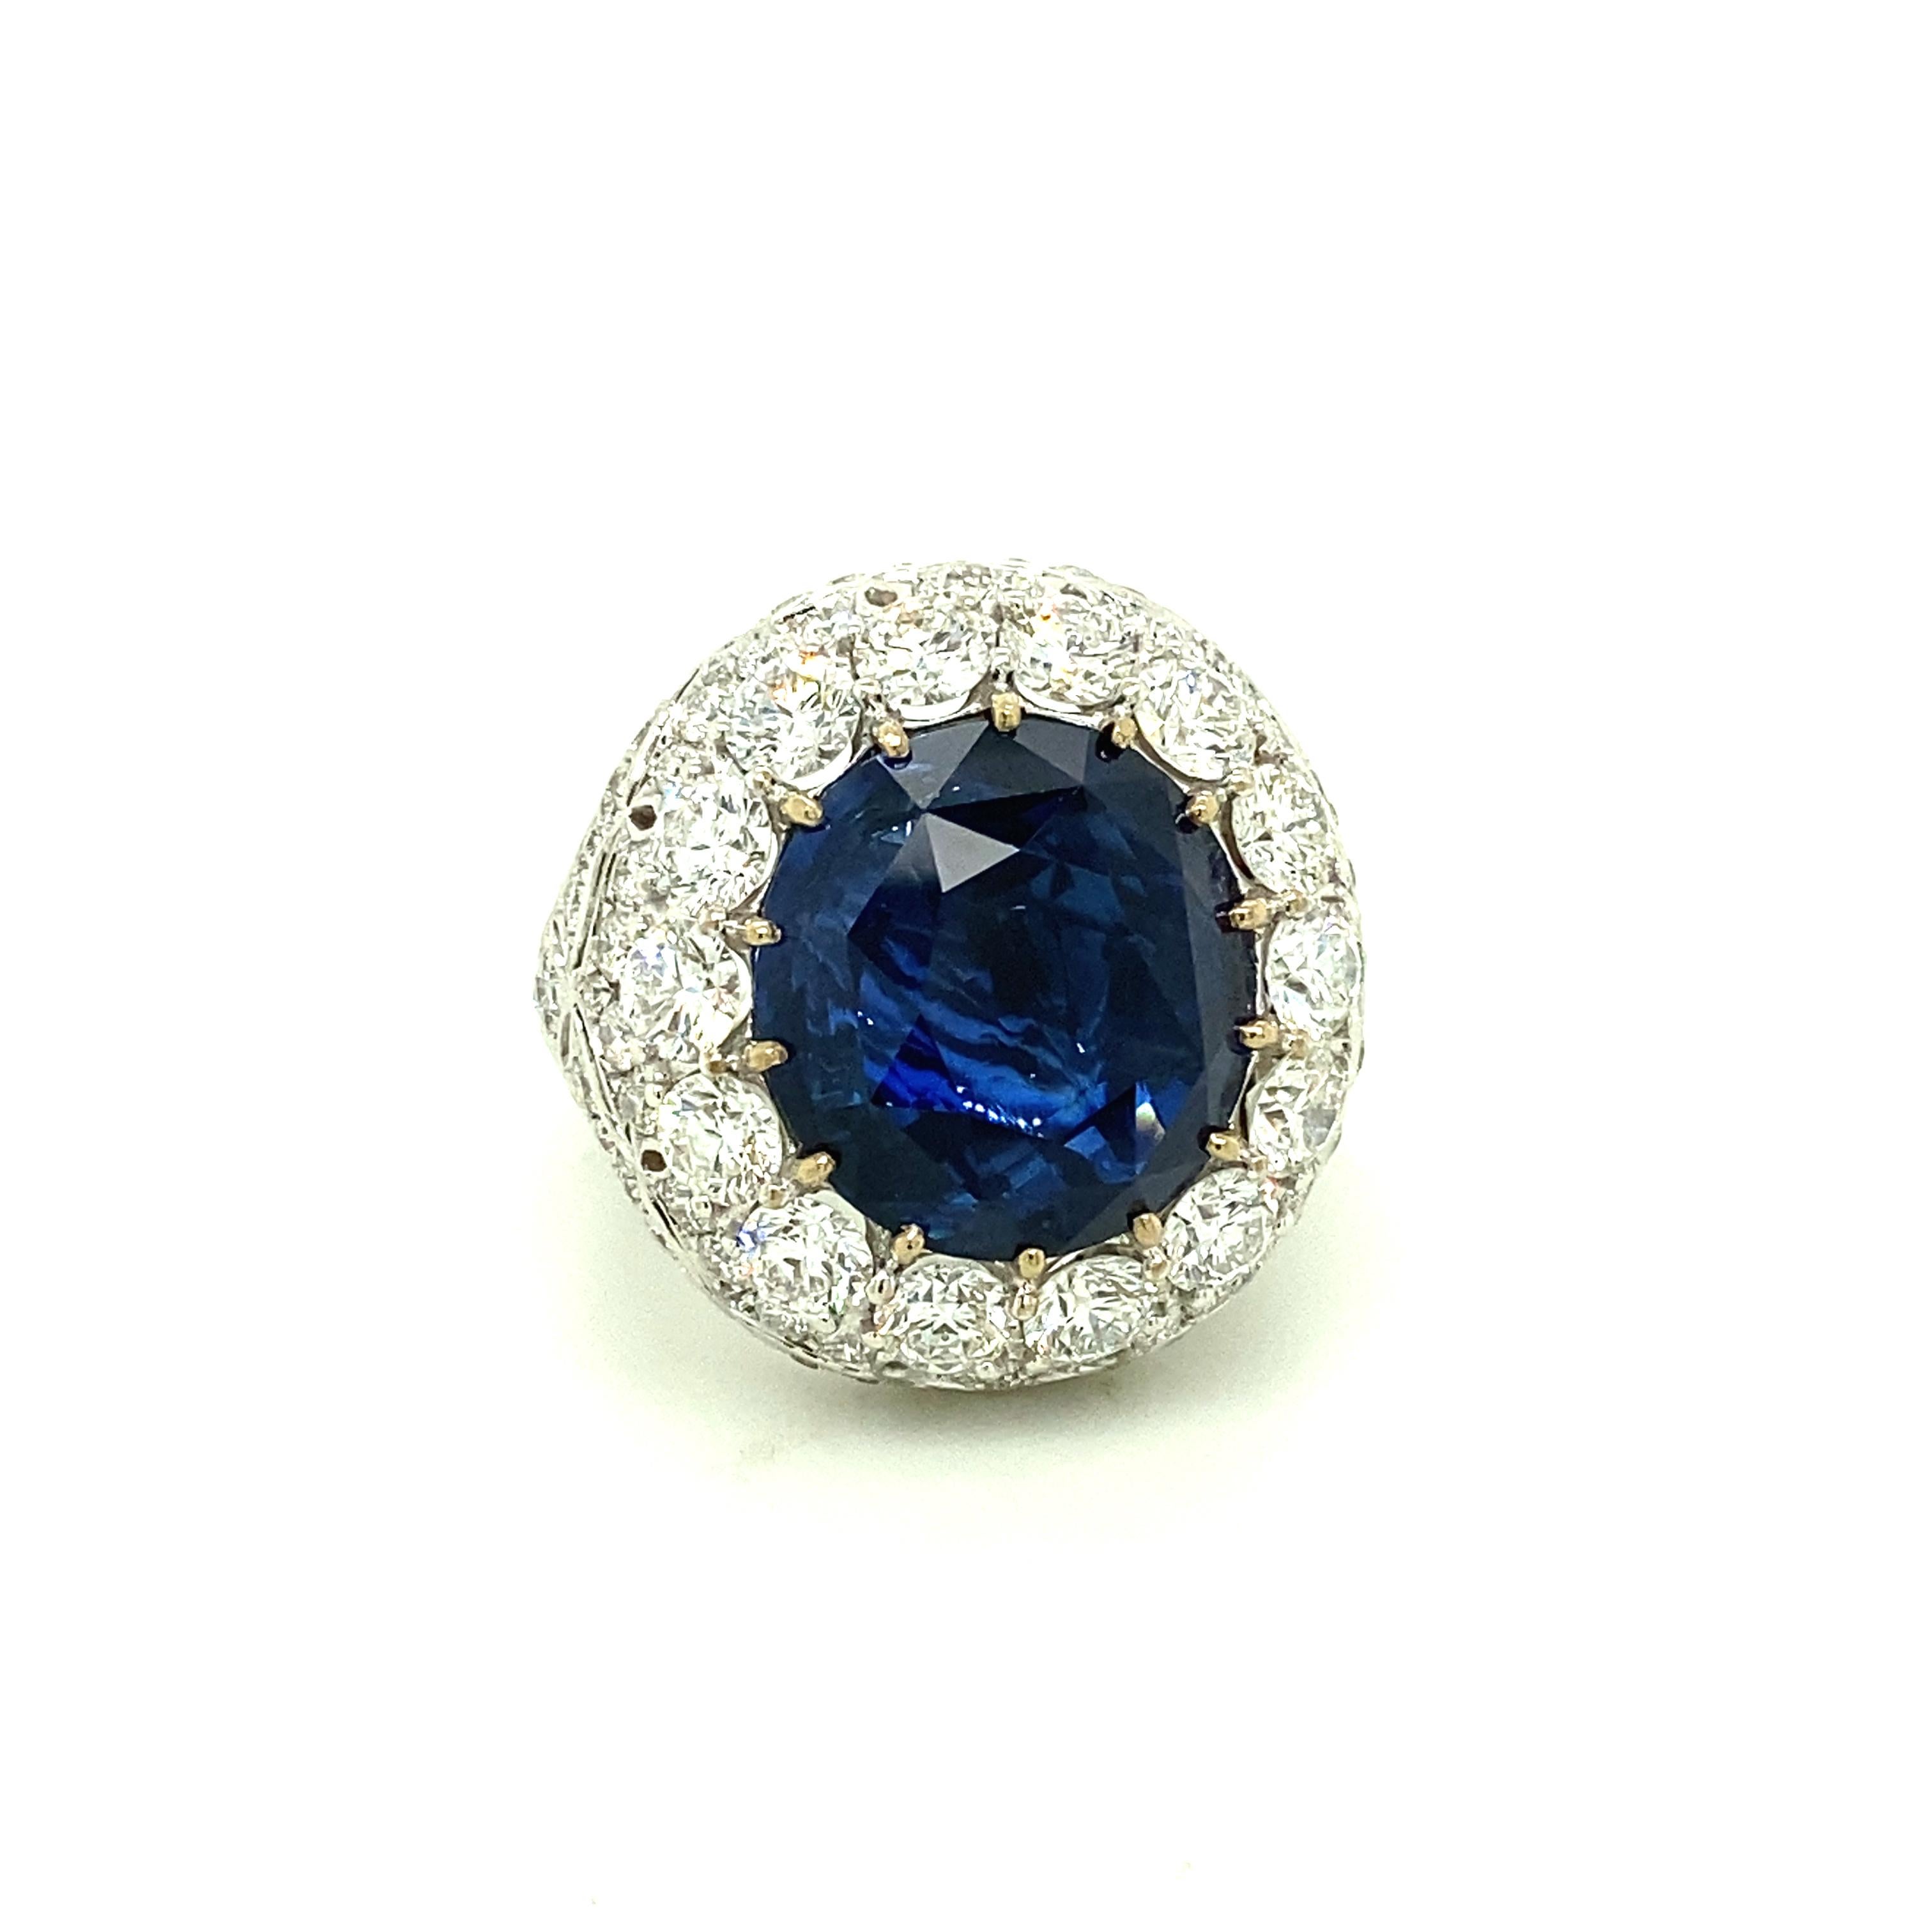 21,81 Karat IGI-zertifizierter Ceylon-Saphir und weißer Diamant Gold Cocktail-Ring:

Ein atemberaubender Ring mit einem riesigen blauen Saphir im Rundschliff von 21,81 Karat (IGI-zertifiziert) aus Ceylon (Sri Lanka), umgeben von einem Halo aus